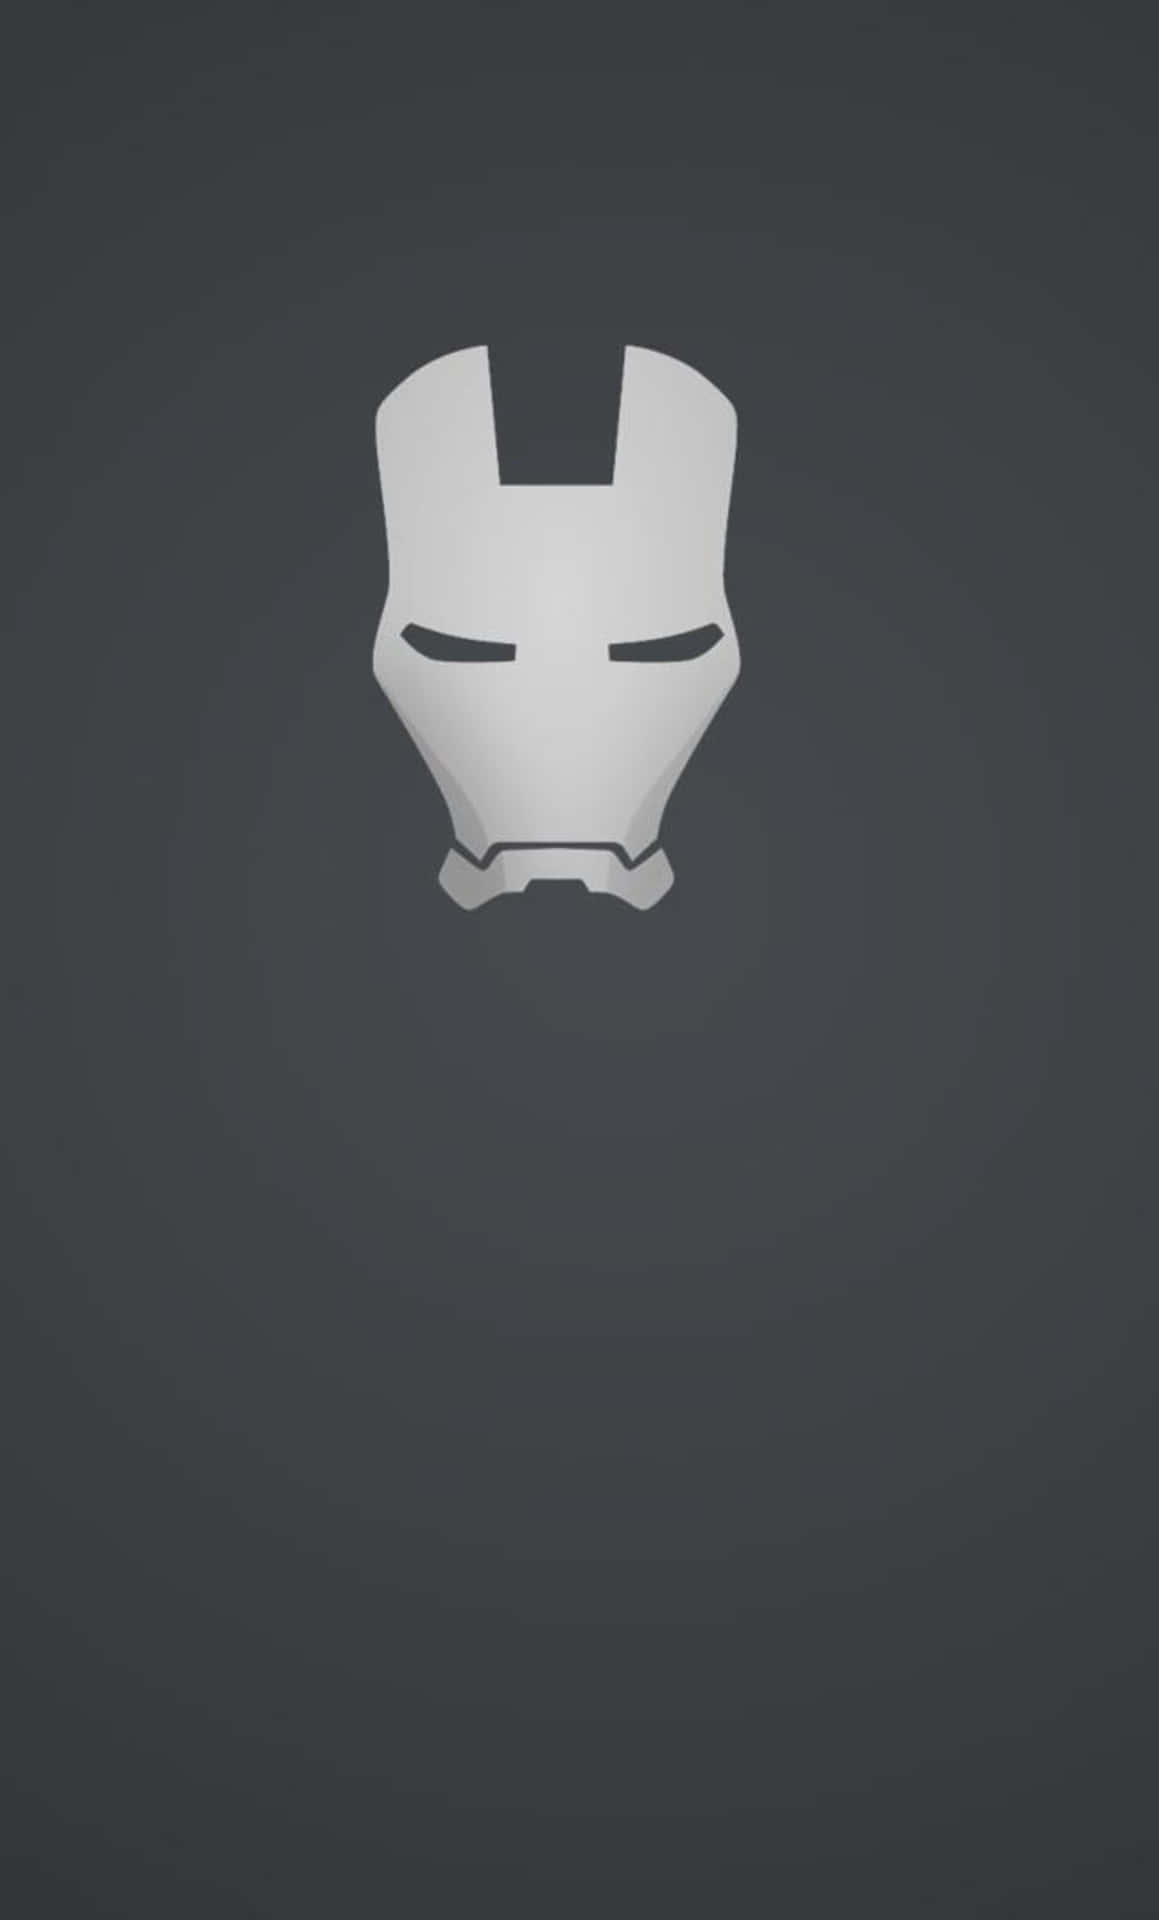 Consiguetu Propio Increíble Fondo De Pantalla De Iron Man Para Tu Iphone. Fondo de pantalla